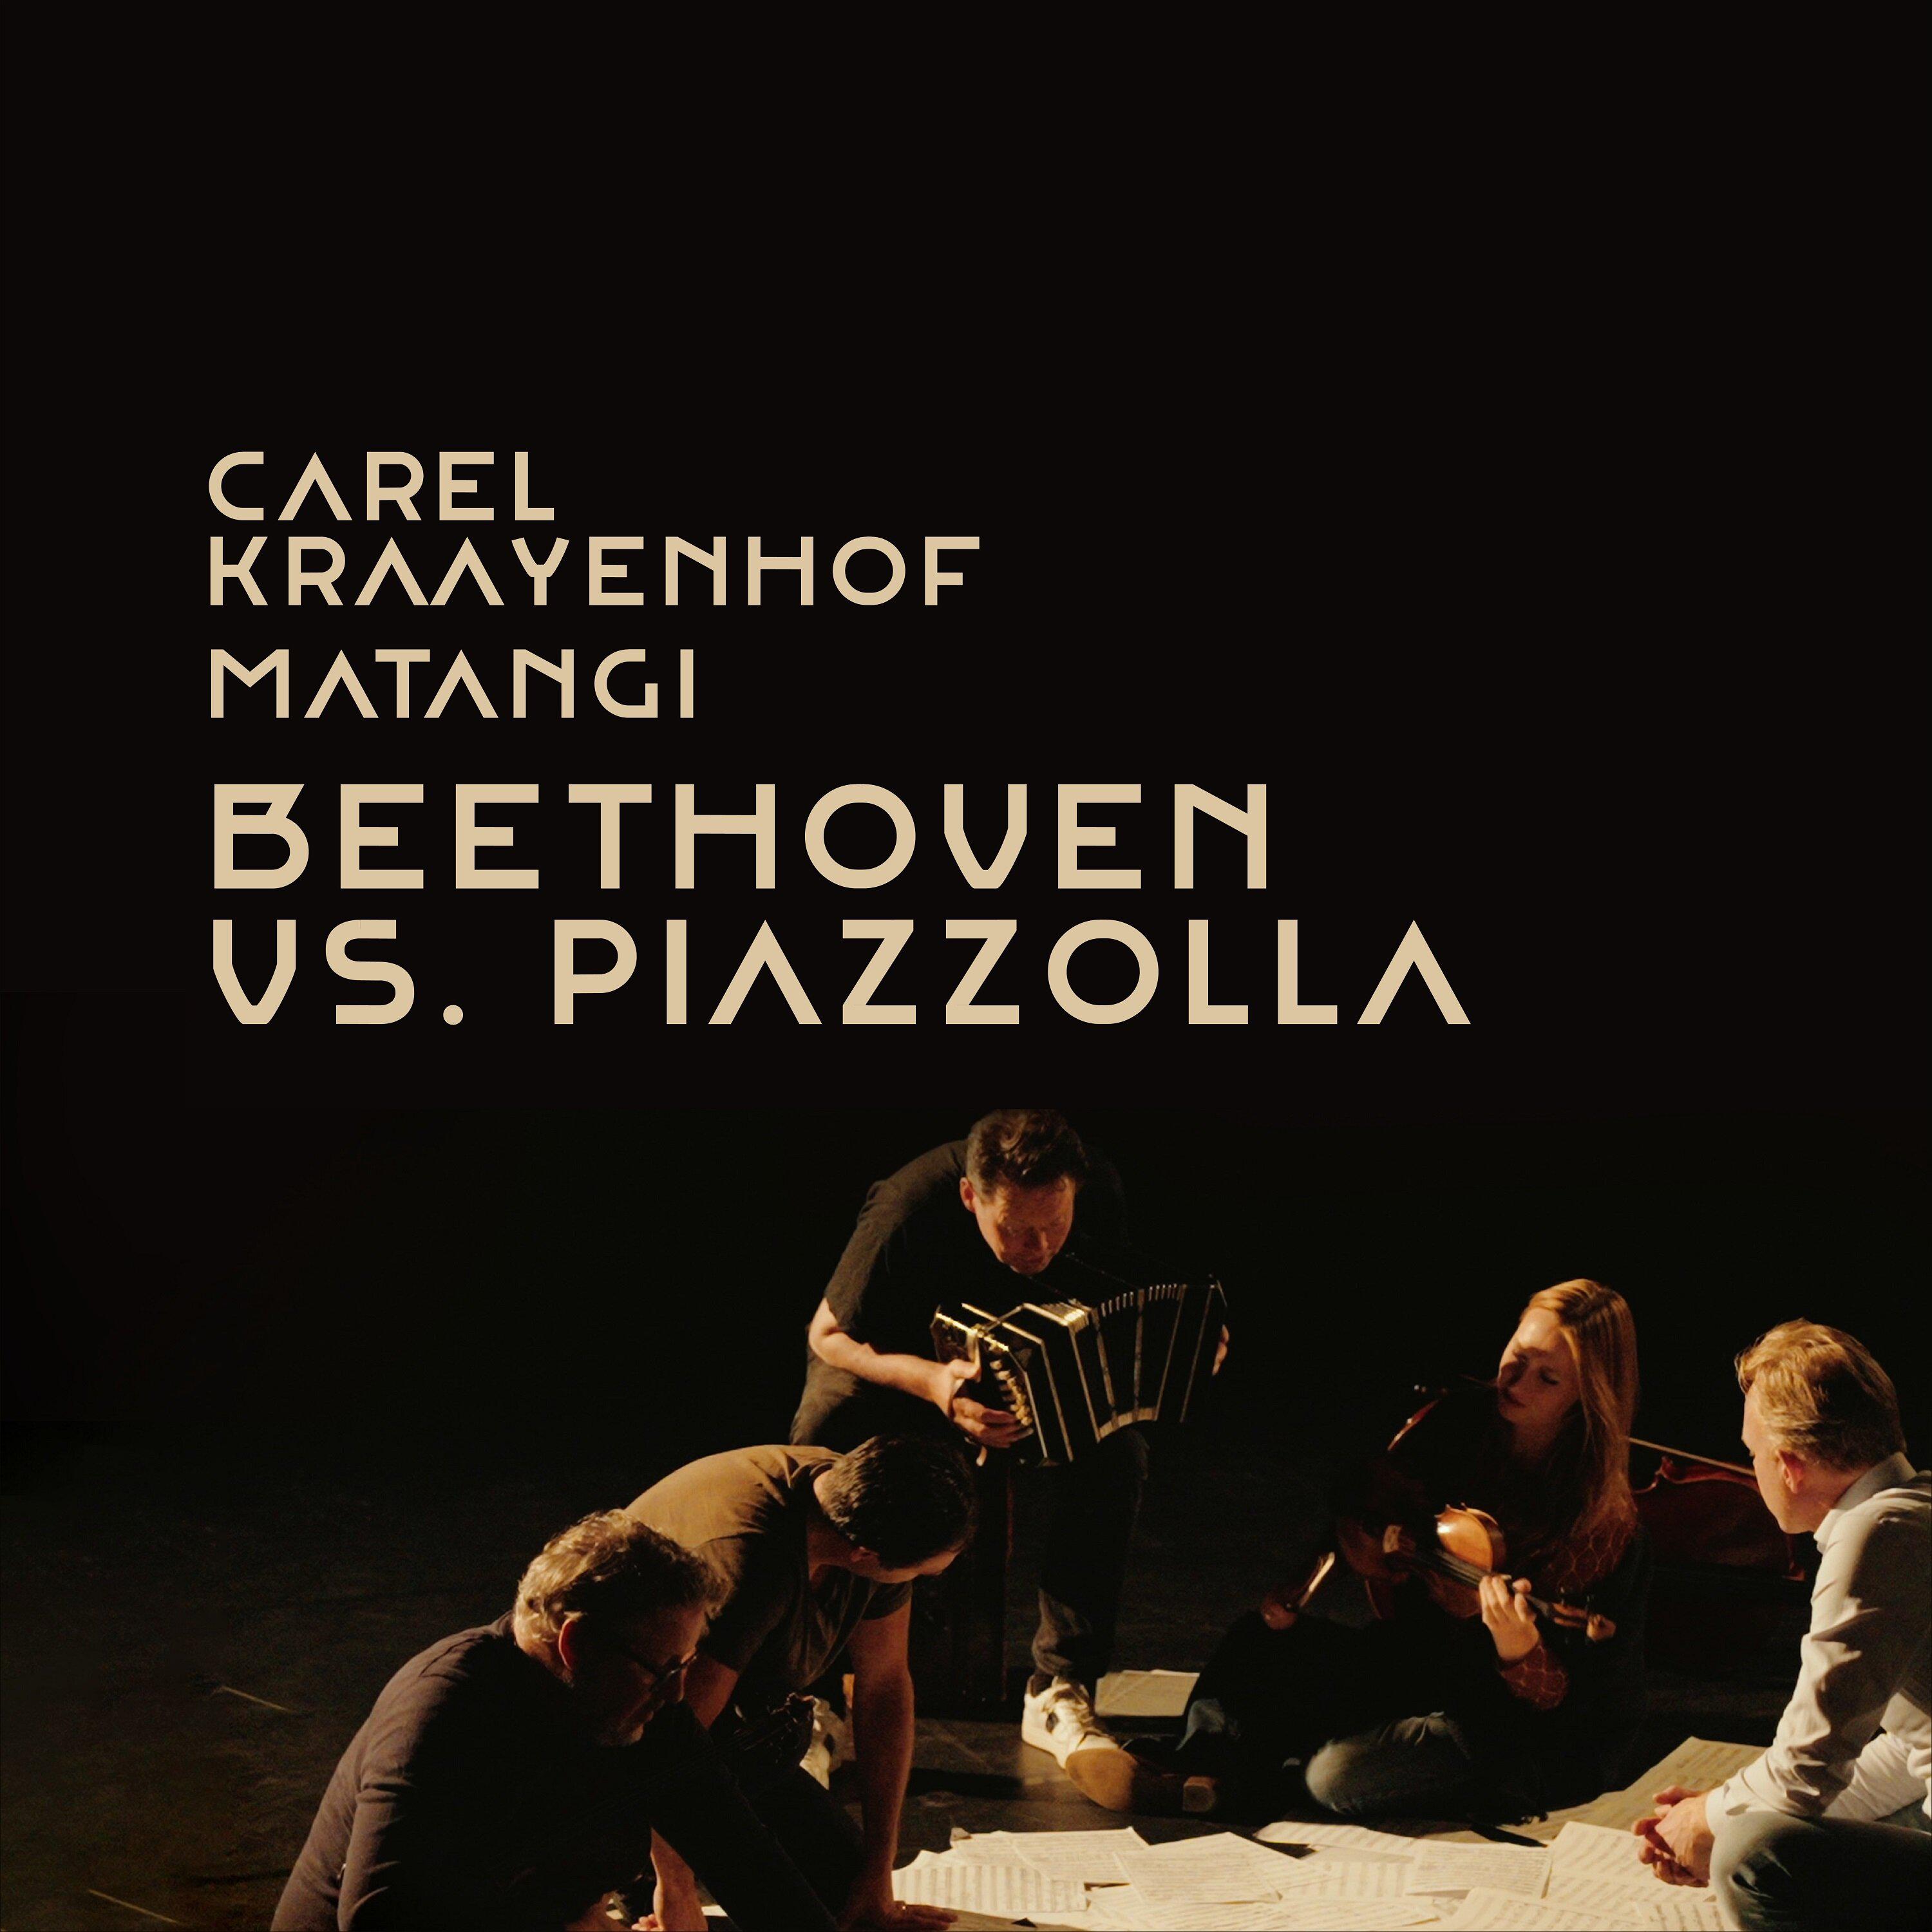 Carel Kraayenhof - La Muerte del Angel (Arr. by Marijn van Prooijen & Carel Kraayenhof for string quartet and bandoneon)